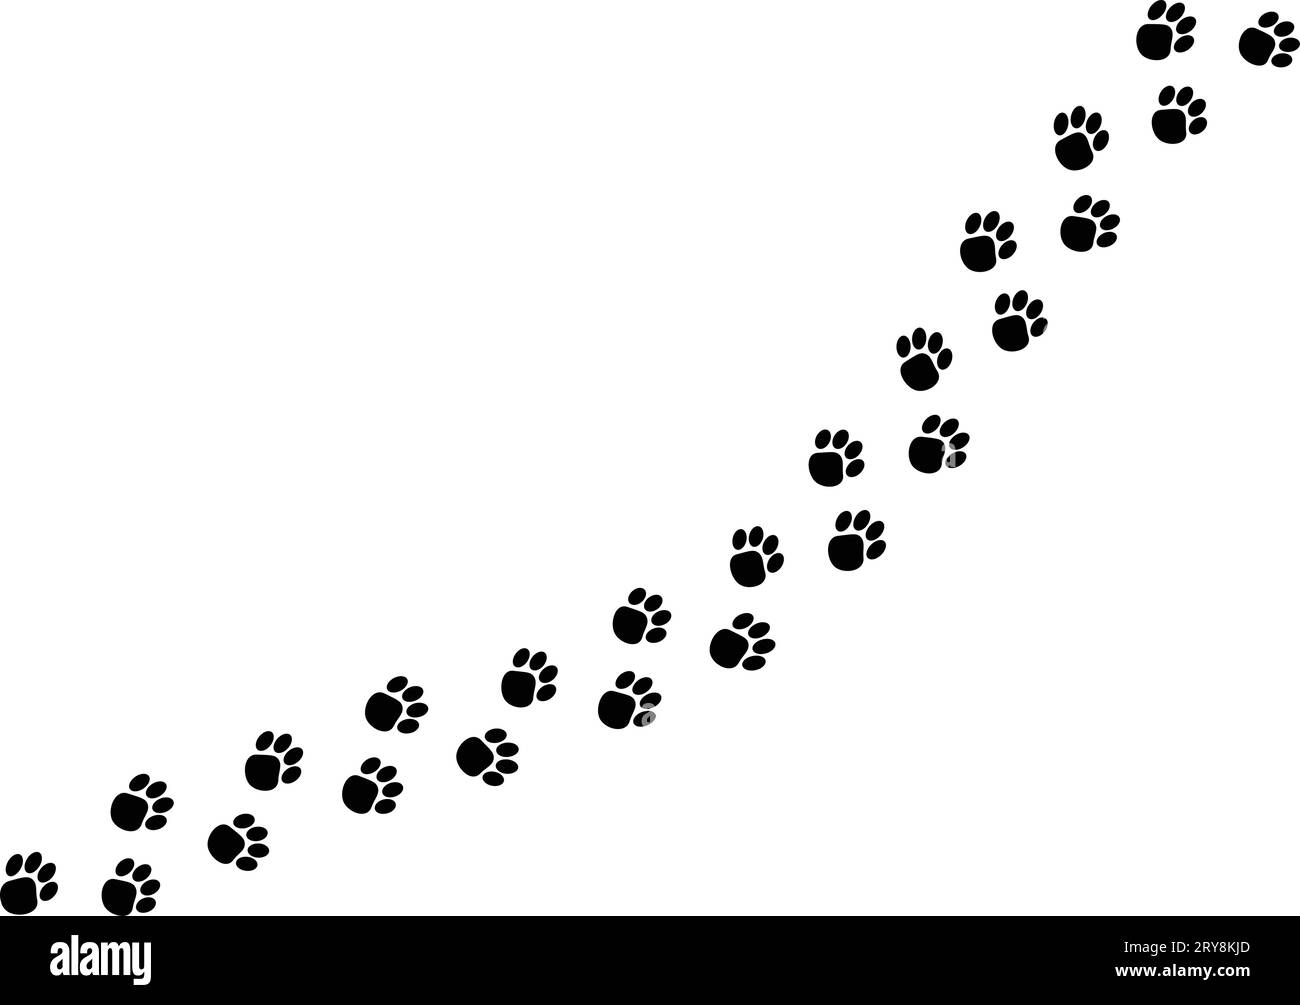 walking animal cat dog footprints tracks pattern brush vector illustration Stock Vector